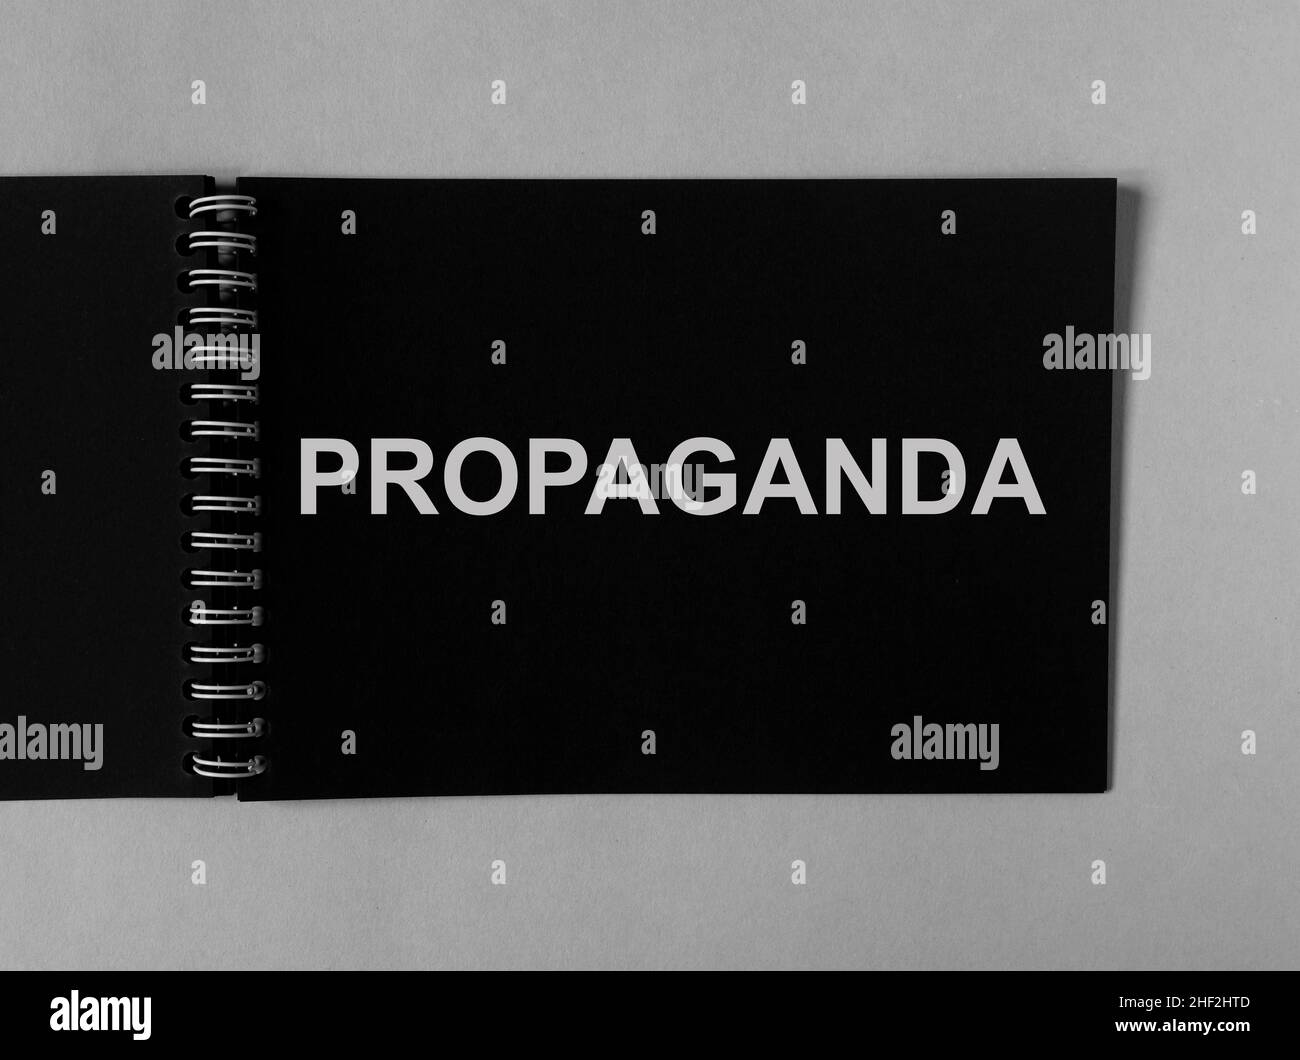 Propagandawort auf dem Papier. Manipulation und Brainwash-Kampagne nach Medienkonzept. Stockfoto